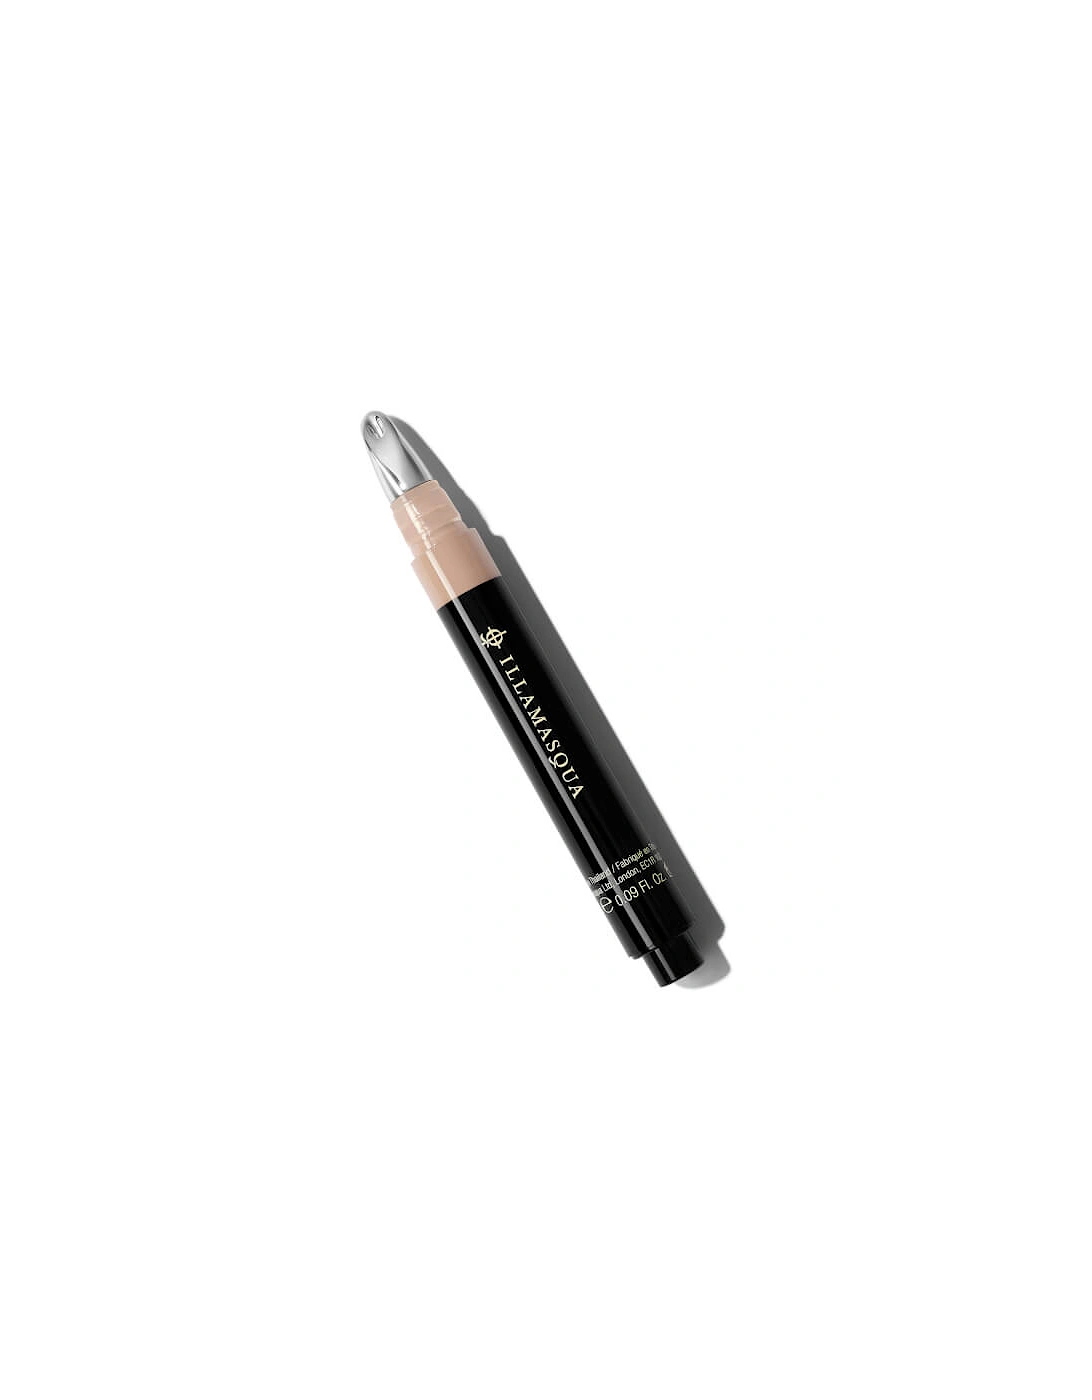 Skin Base Concealer Pen - Light 1, 2 of 1